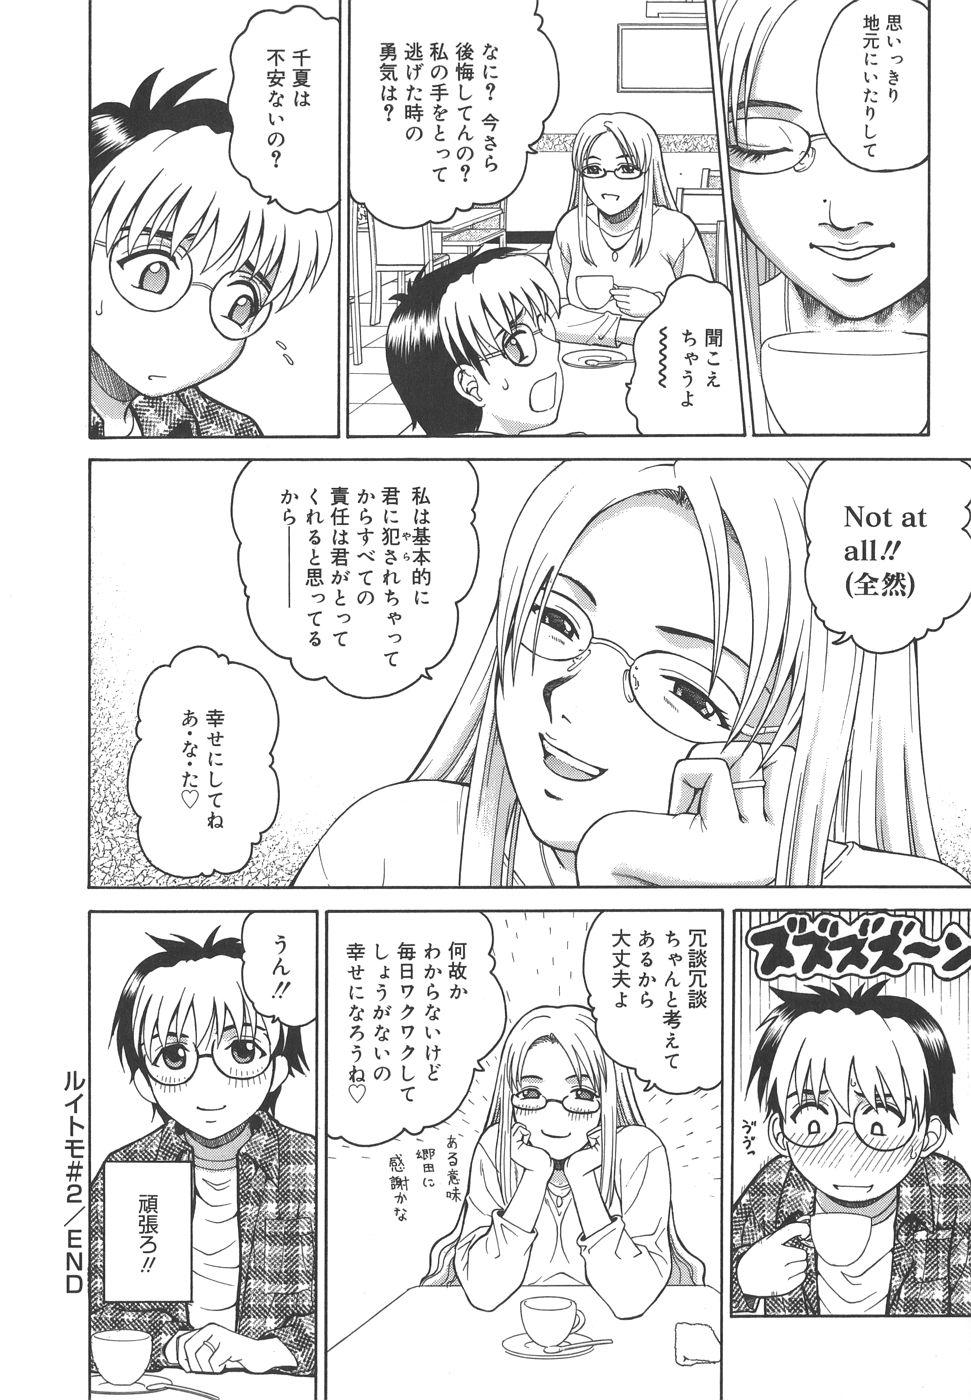 Sis Himitsu Jugyou Pure 18 - Page 234